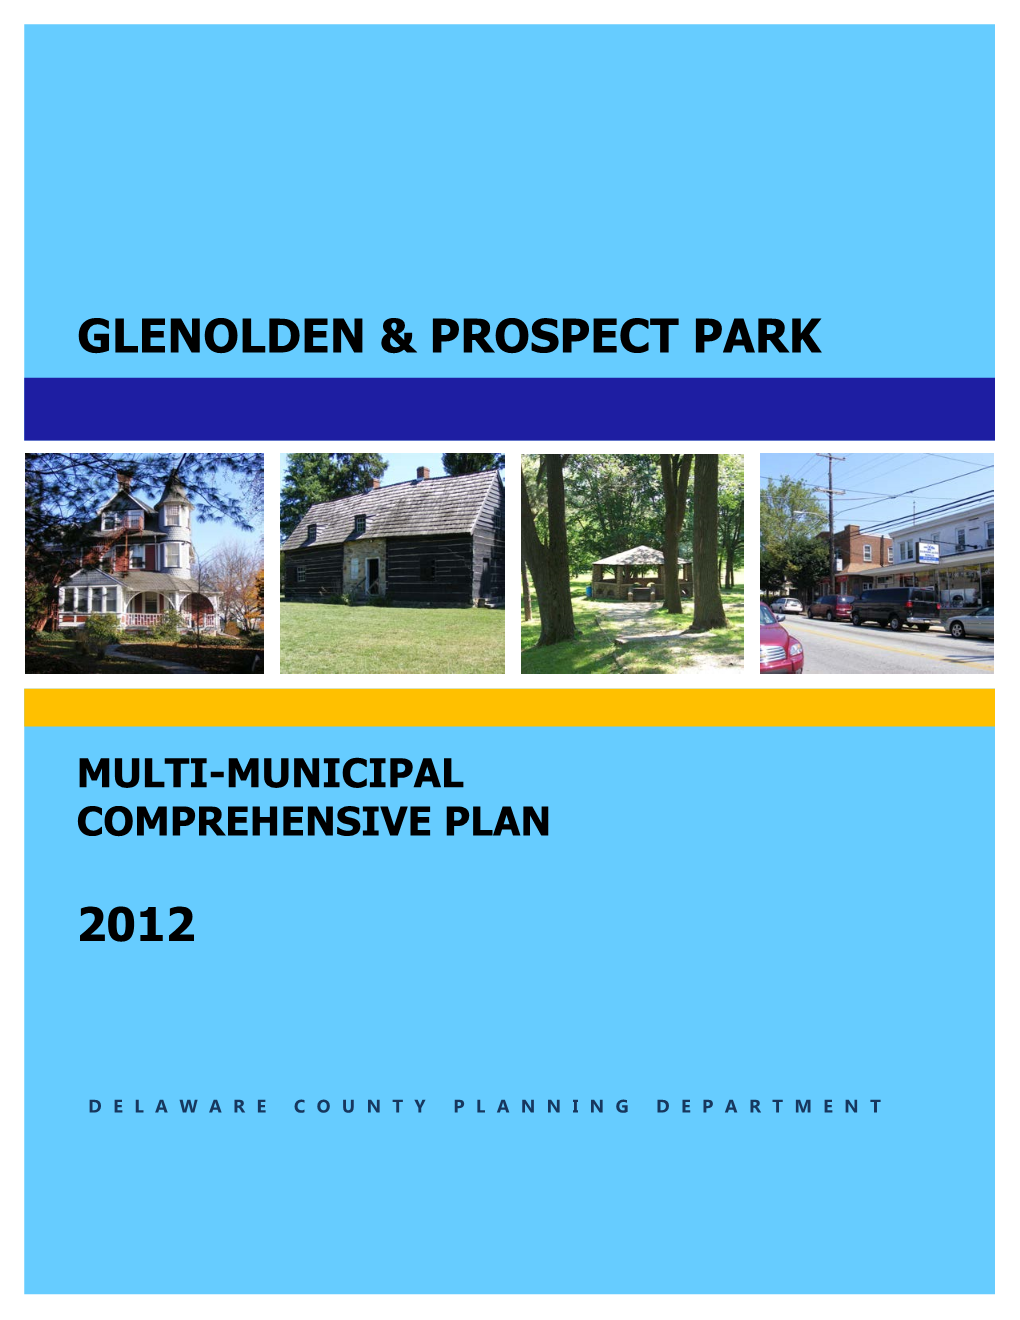 Glenolden and Prospect Park Comprehensive Plan